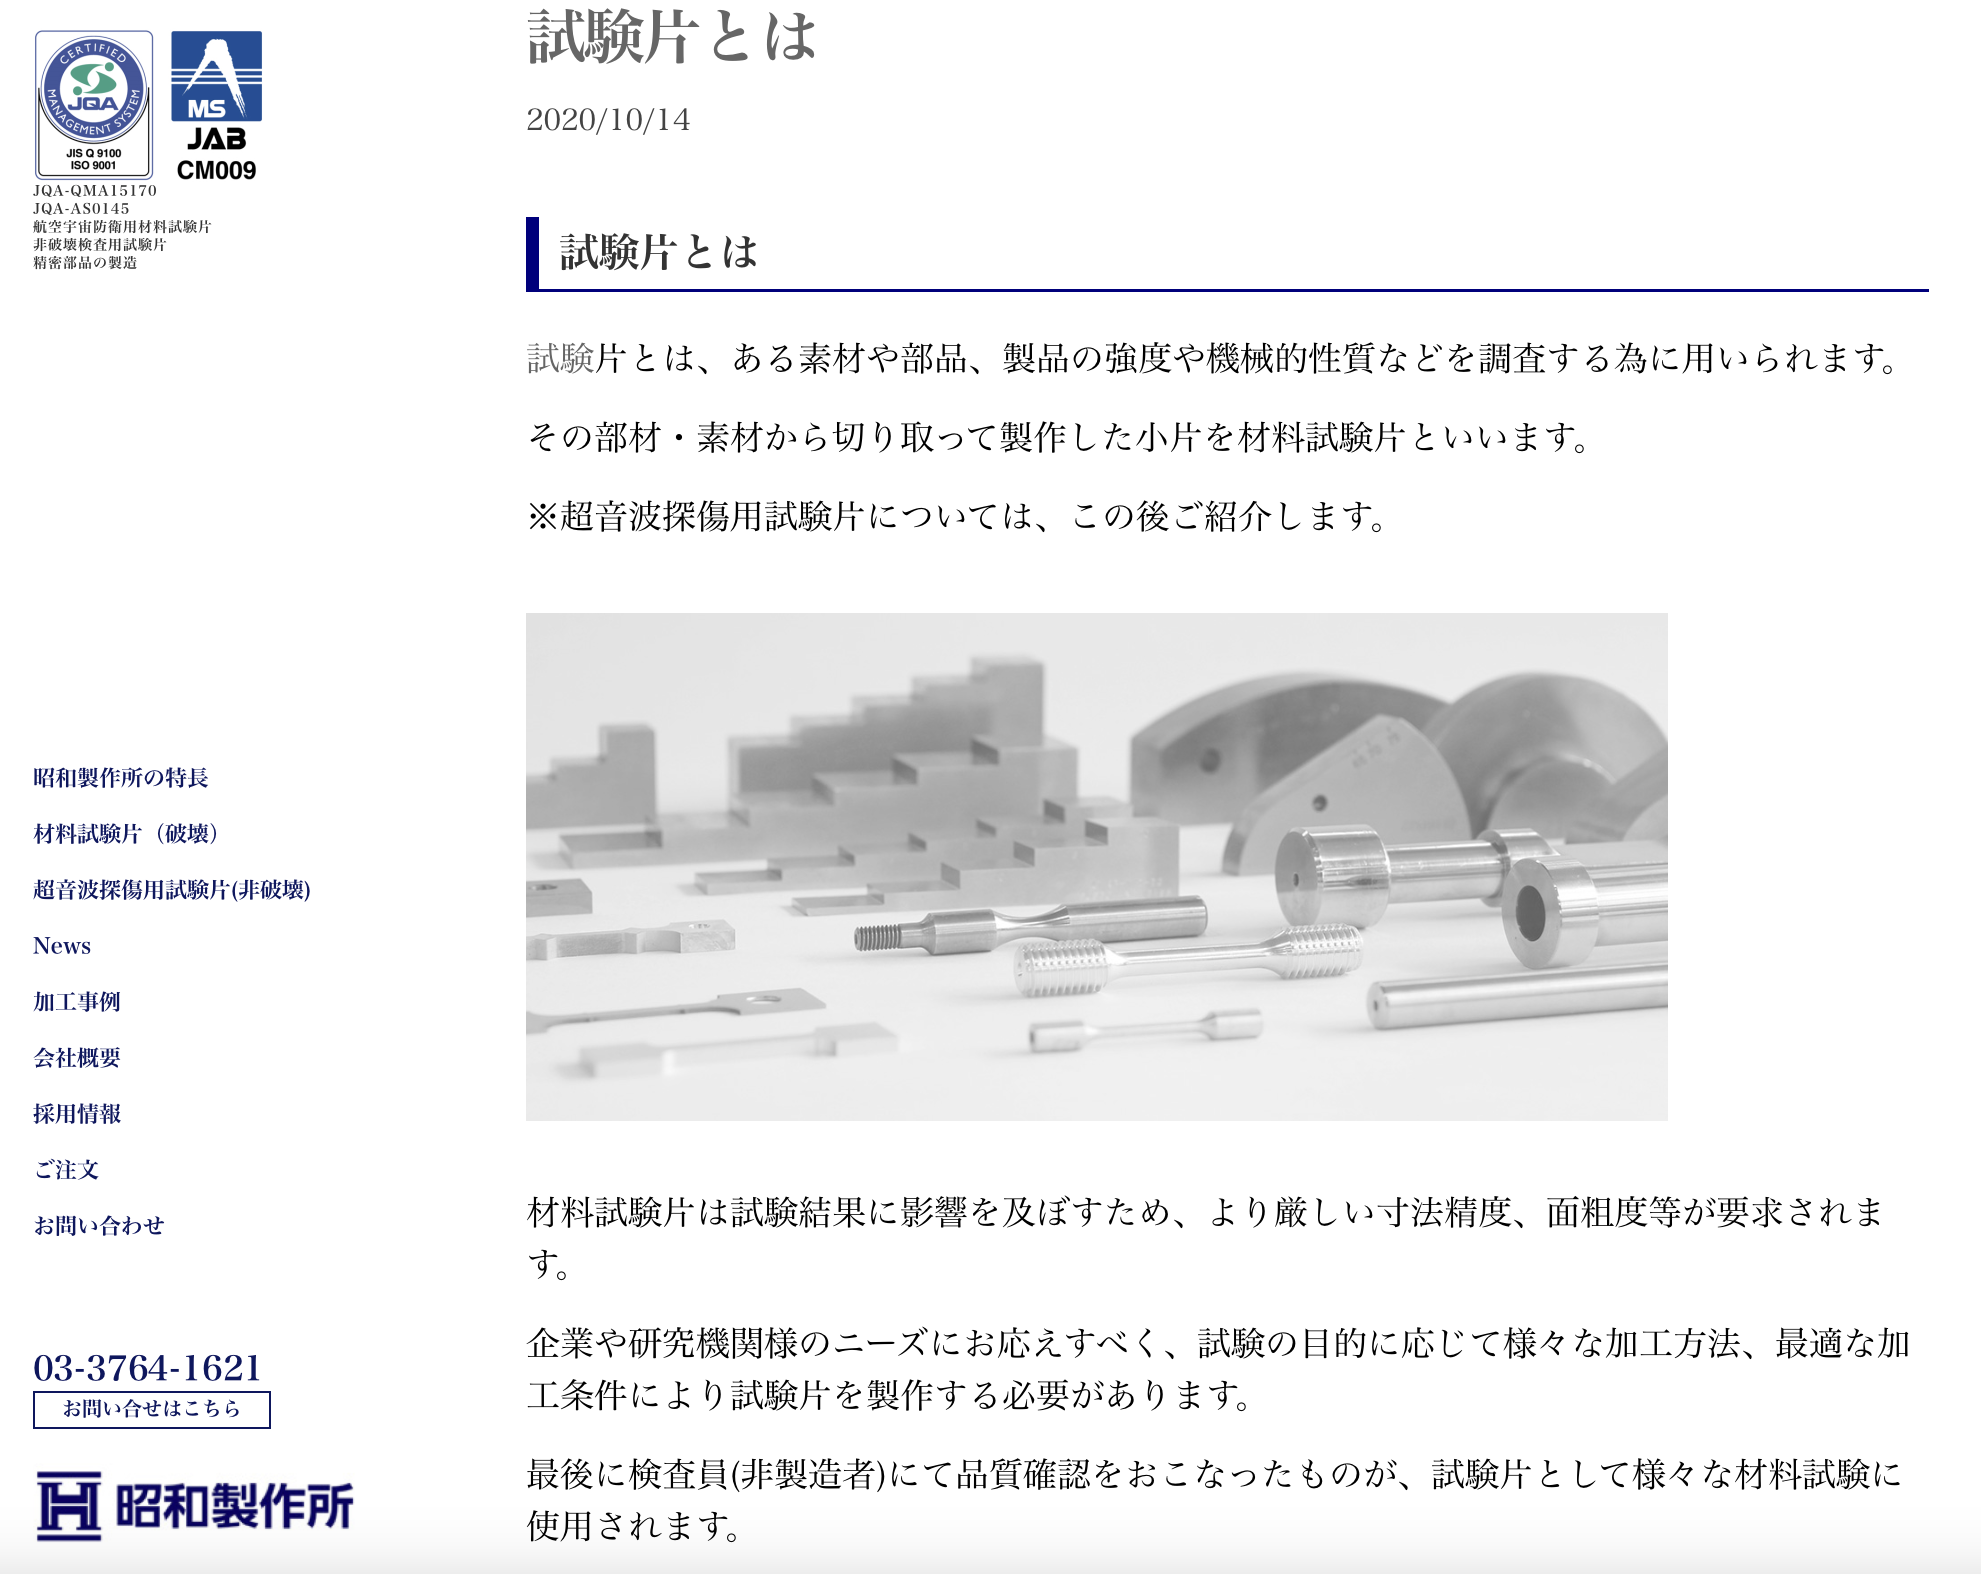 昭和製作所のサイトは専門的なコラムを社員が執筆